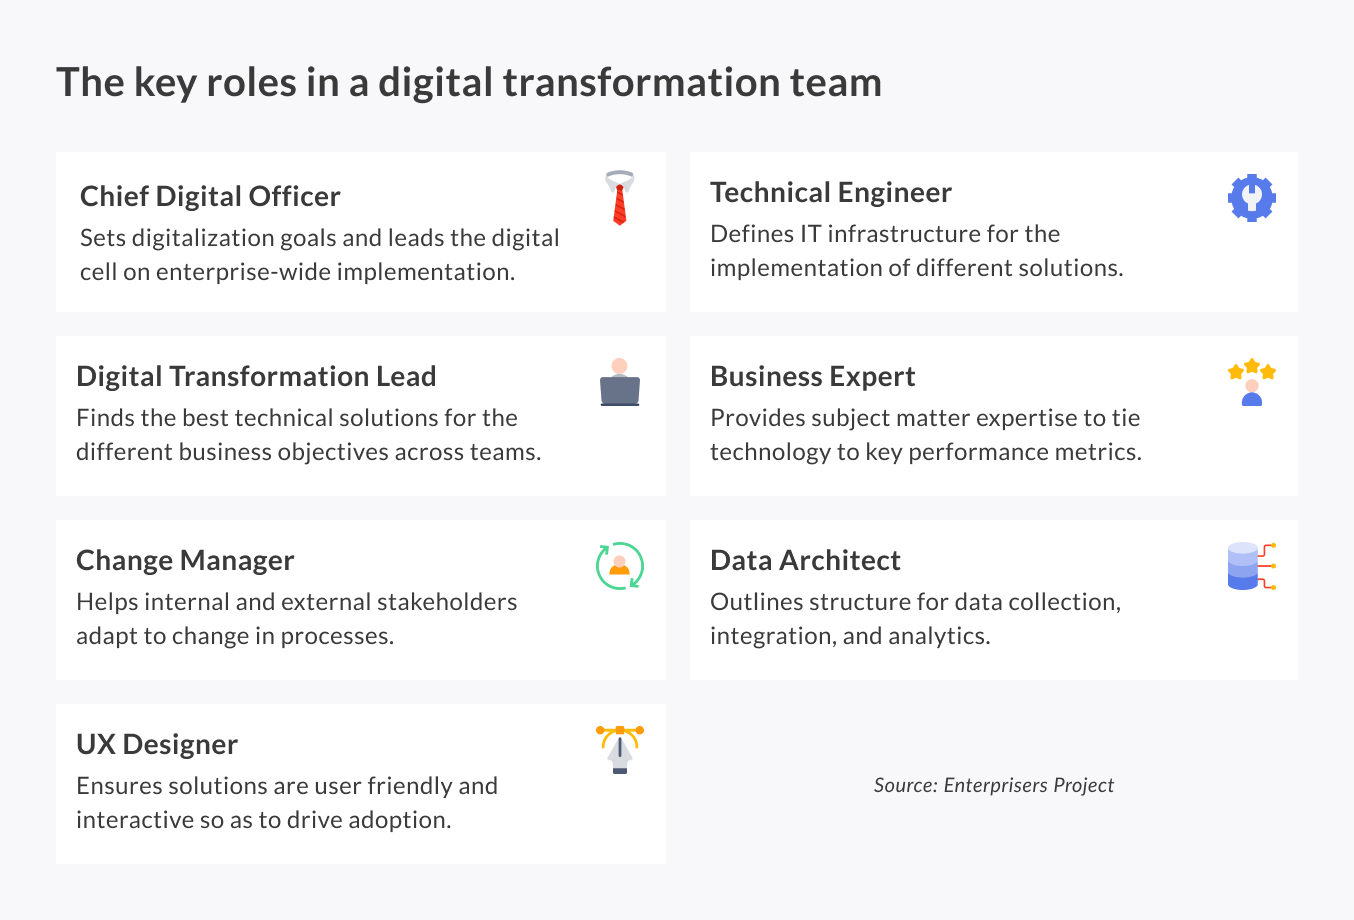 Key roles in a digital transformation team